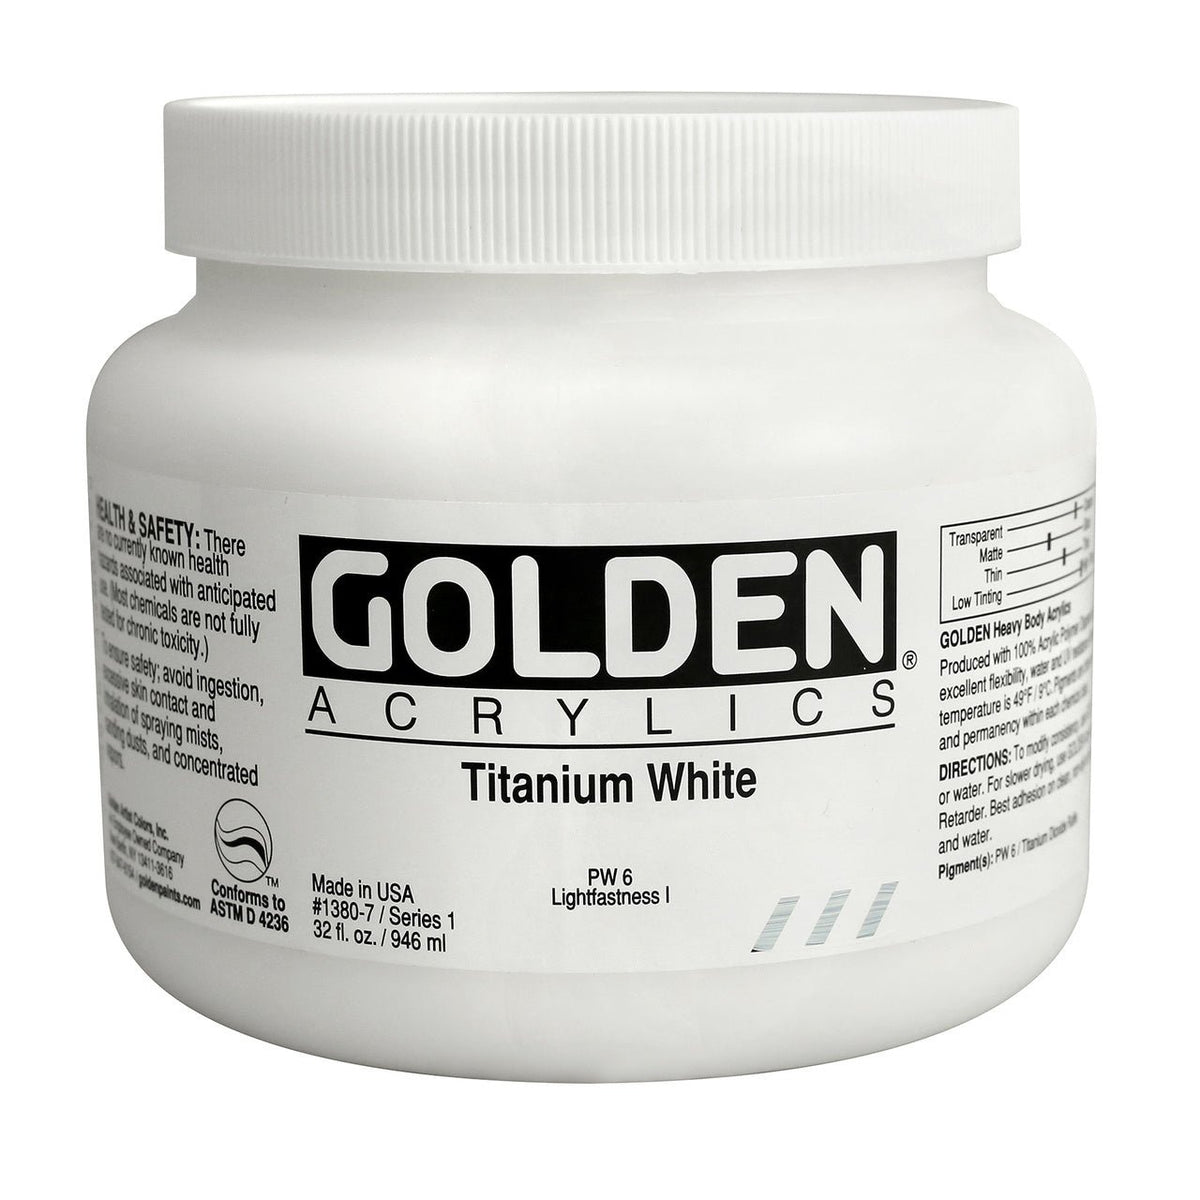 Golden Heavy Body Acrylic - Titanium White 16 oz.